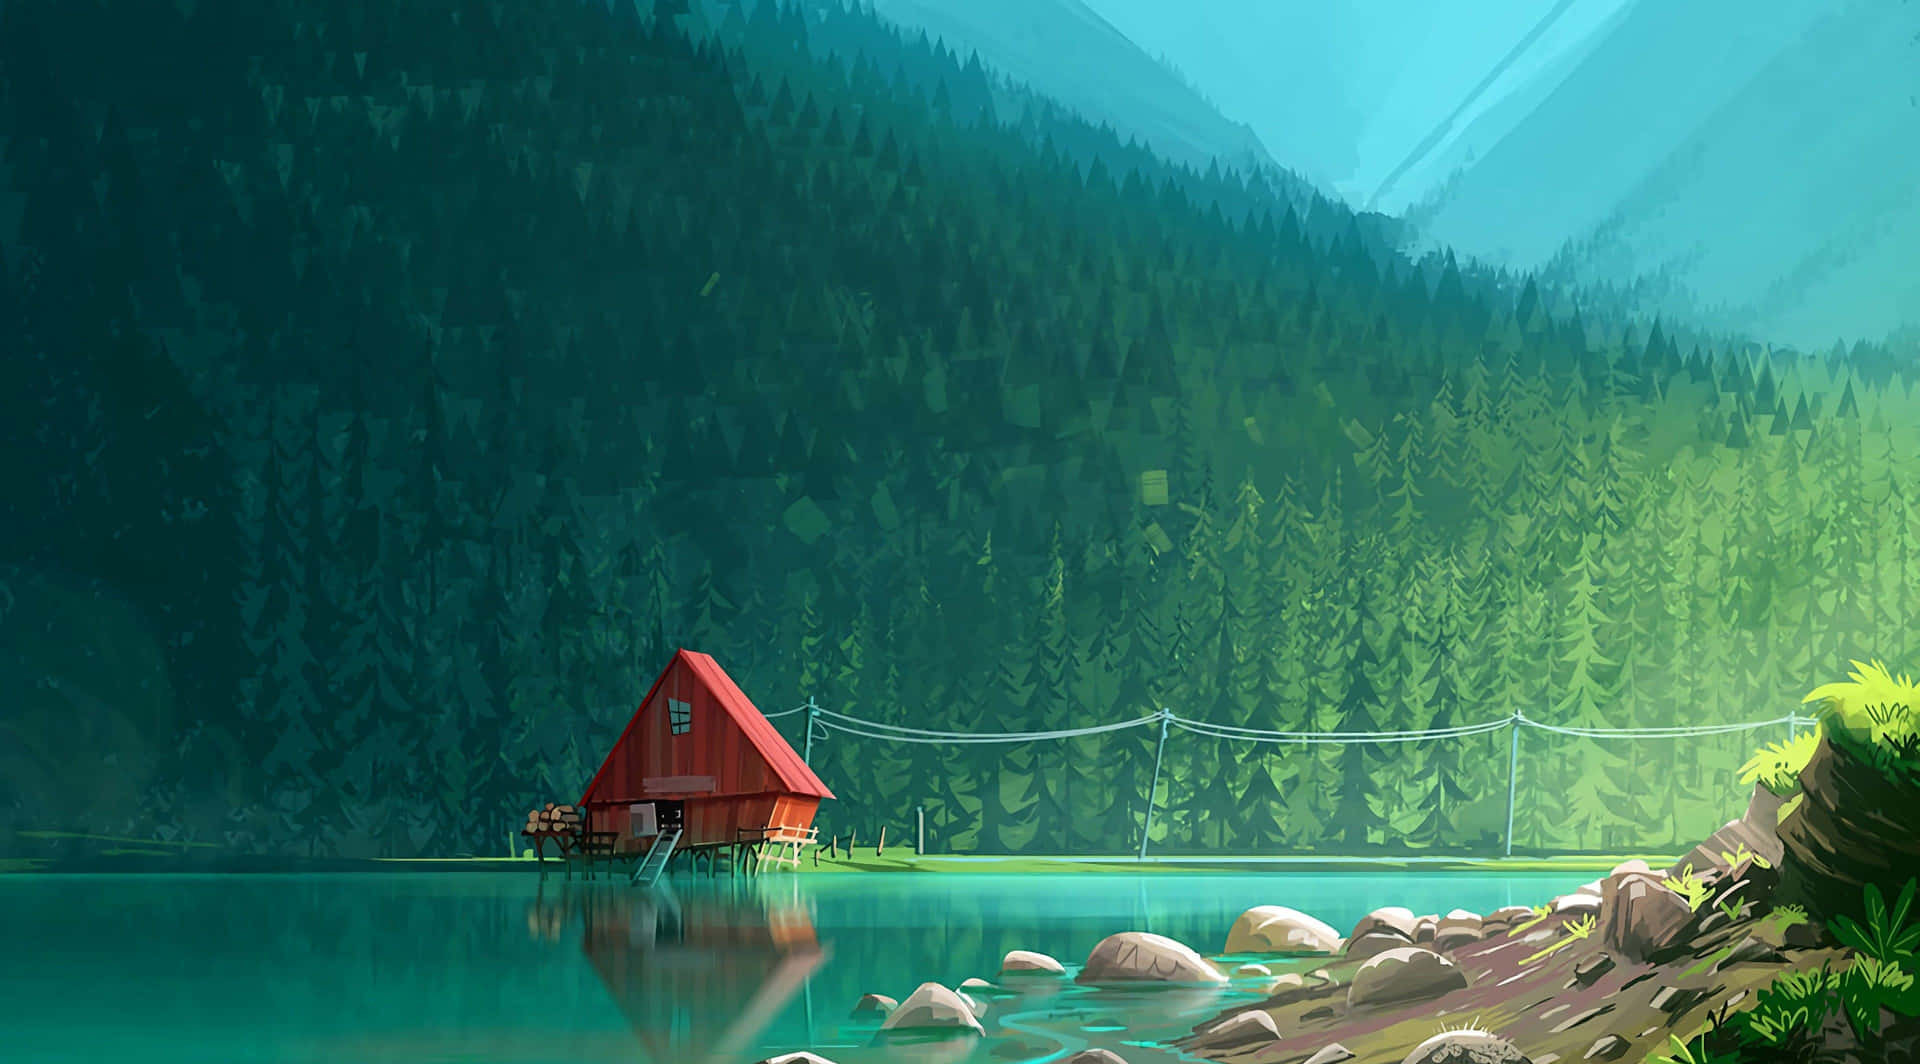 Serene Lakeside Cabin Illustration Wallpaper